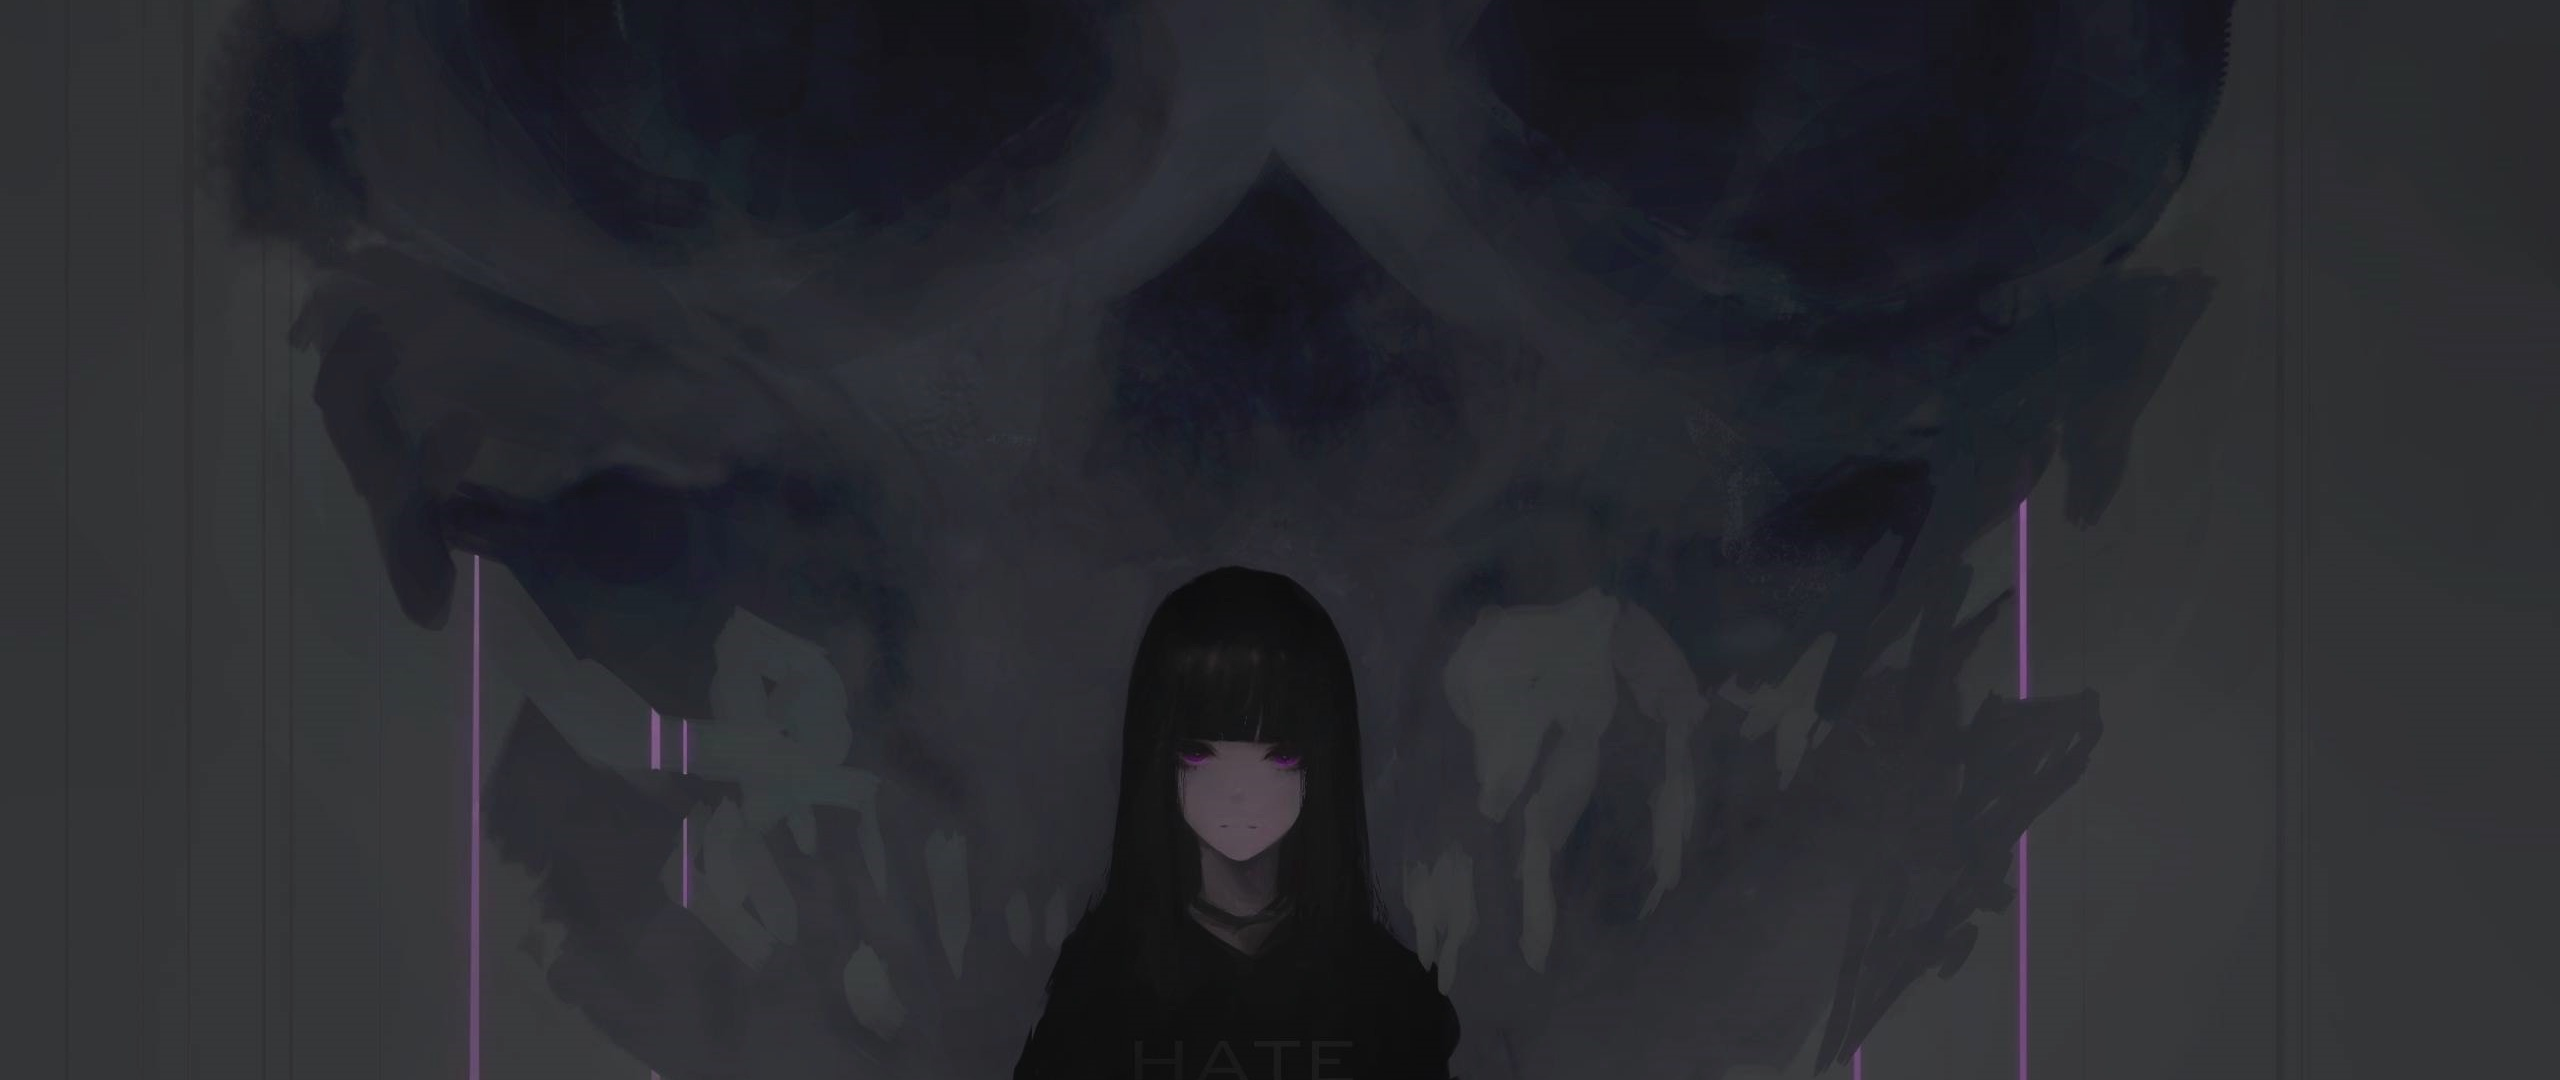 Download 2560x1080 Wallpaper Anime Girl Purple Eyes Dark Skull